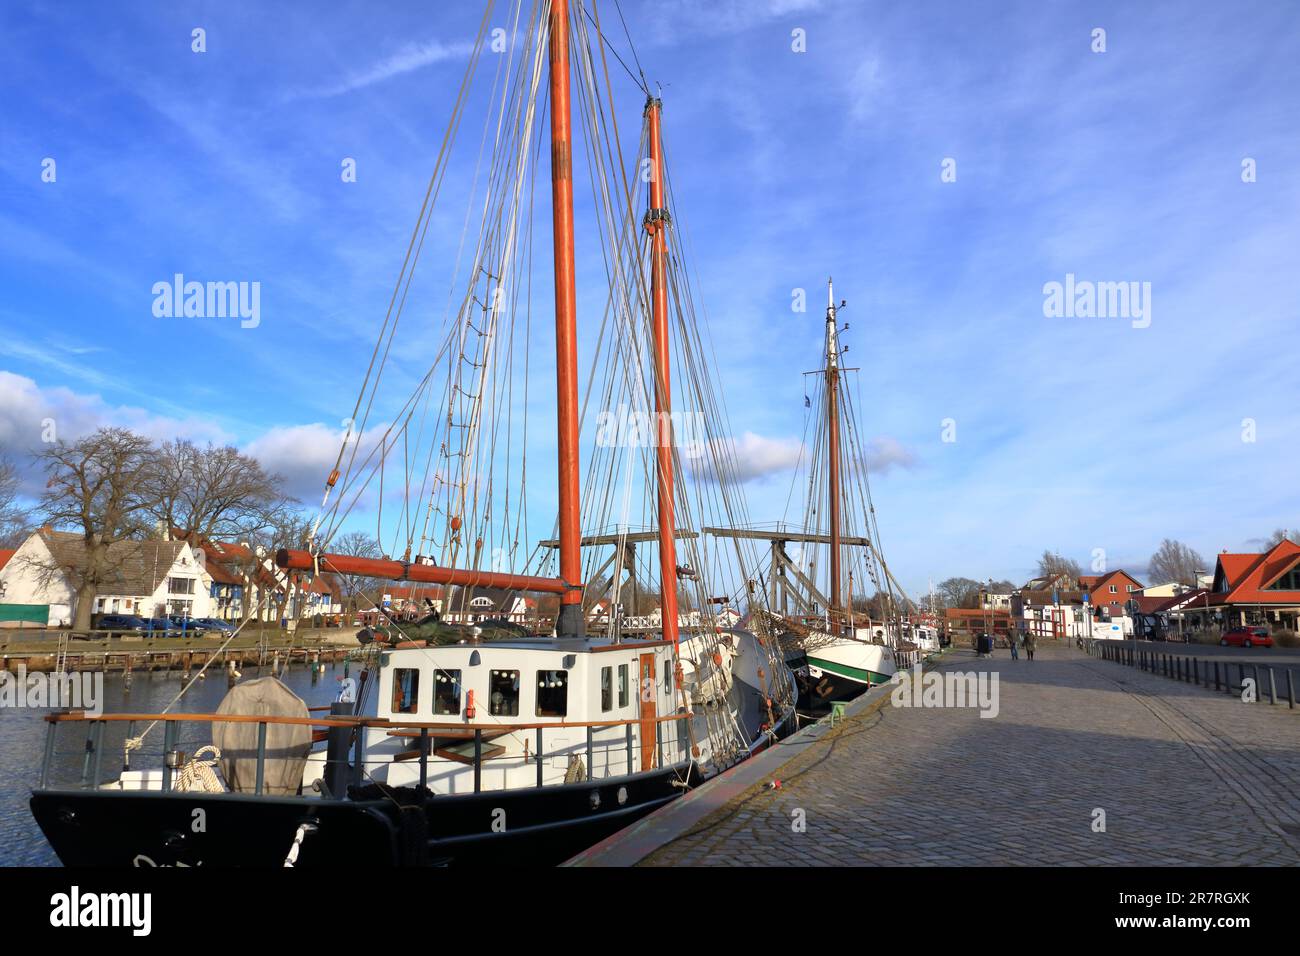 Januar 28 2023 - Wieck, Greifswald in Deutschland: Der Hafen des schönen Dorfes im Winter Stockfoto